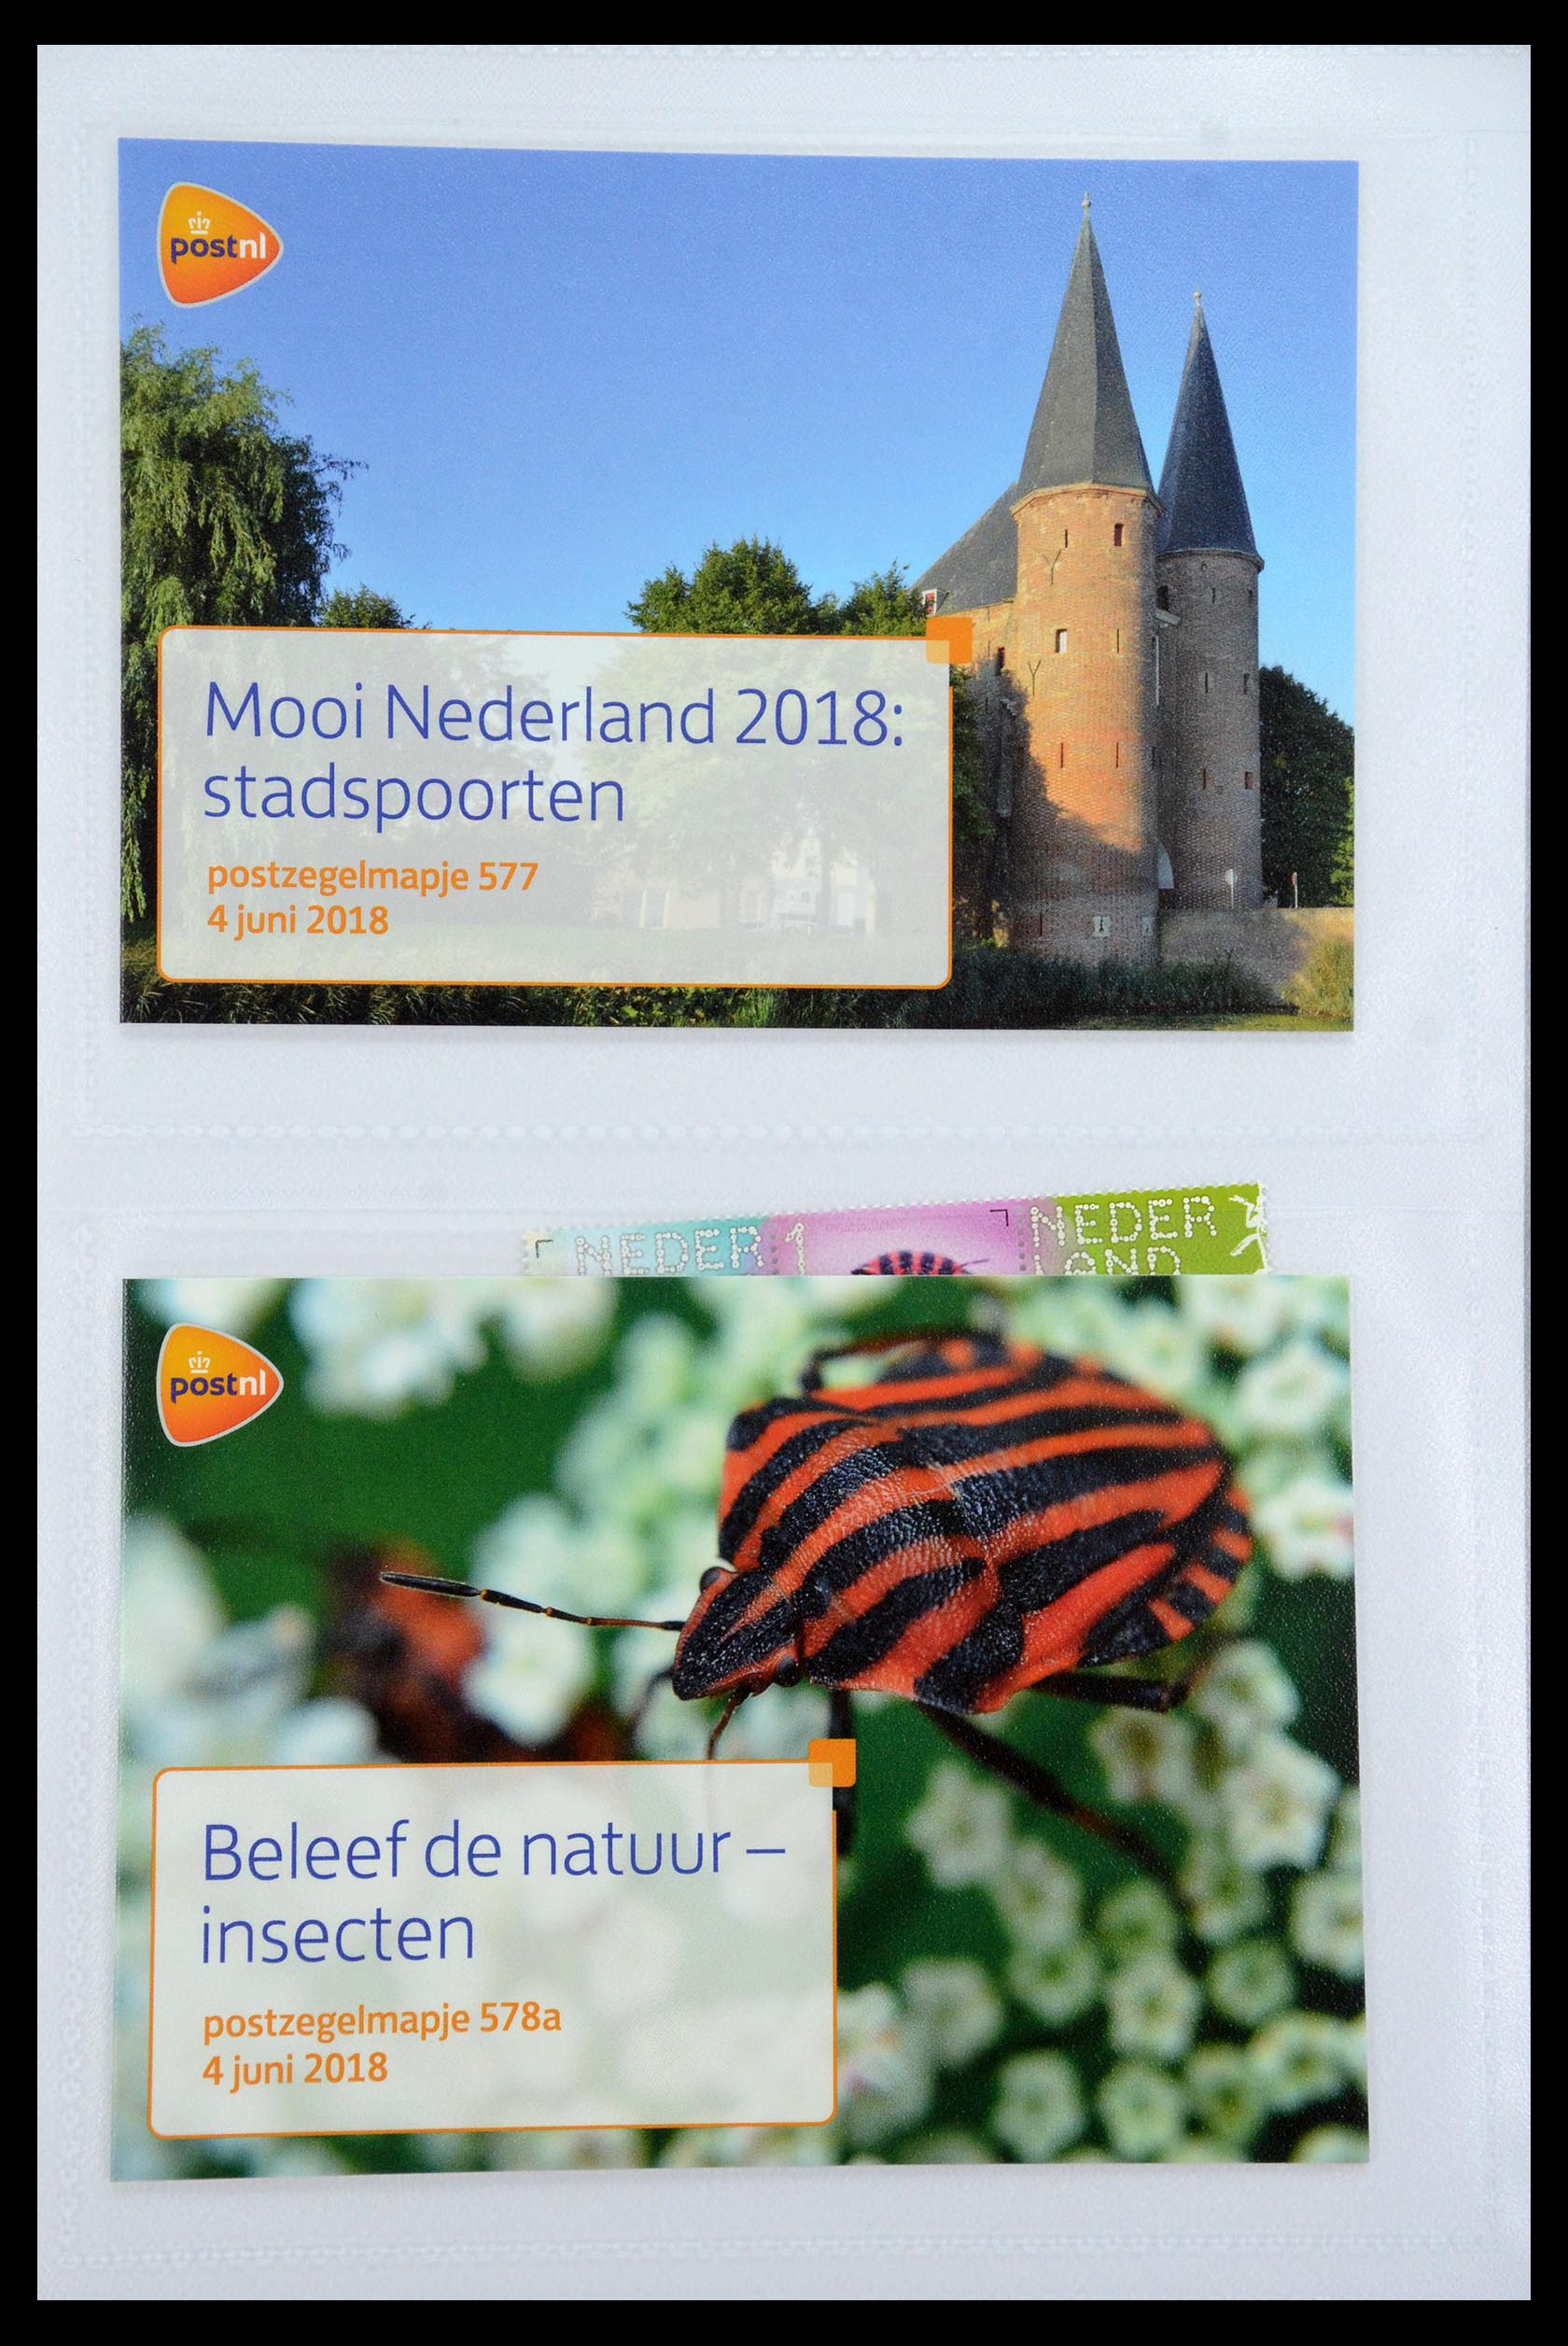 35947 348 - Stamp Collection 35947 Netherlands PTT presentation packs 1982-2019!